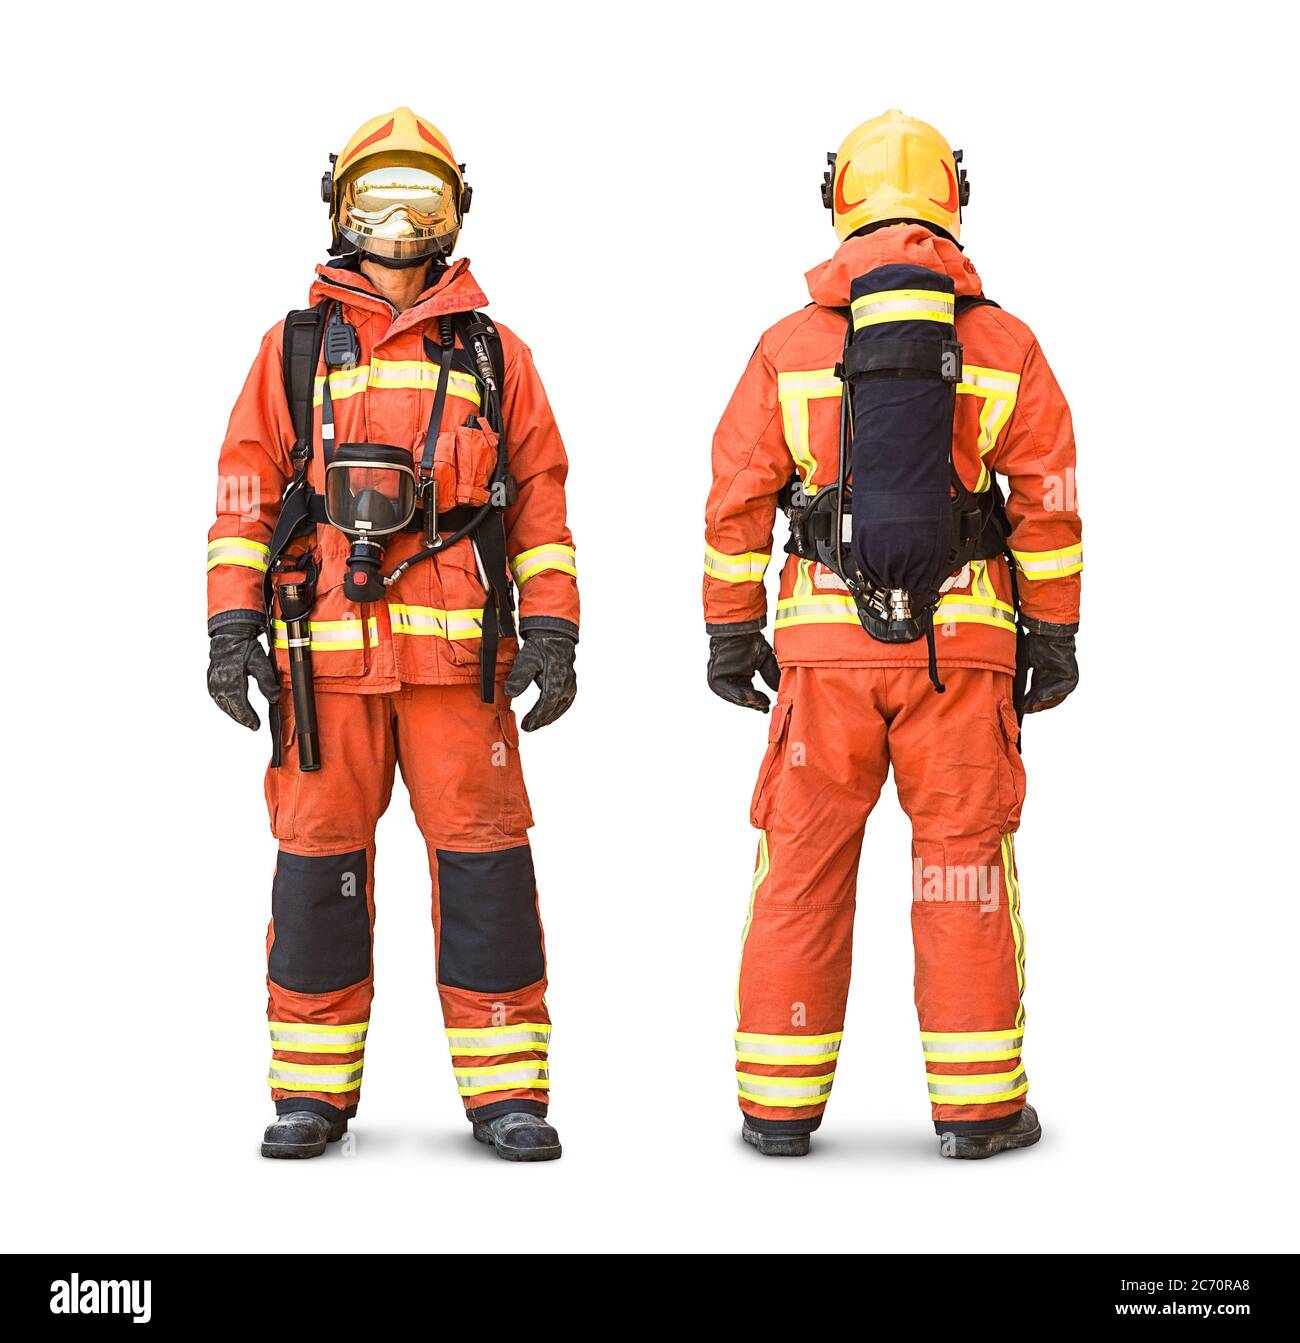 Stock Foto von einem isolierten Feuerwehrmann zeigt volle Ausrüstung und Kleidung in einer Vorder-und Rückansicht Stockfoto